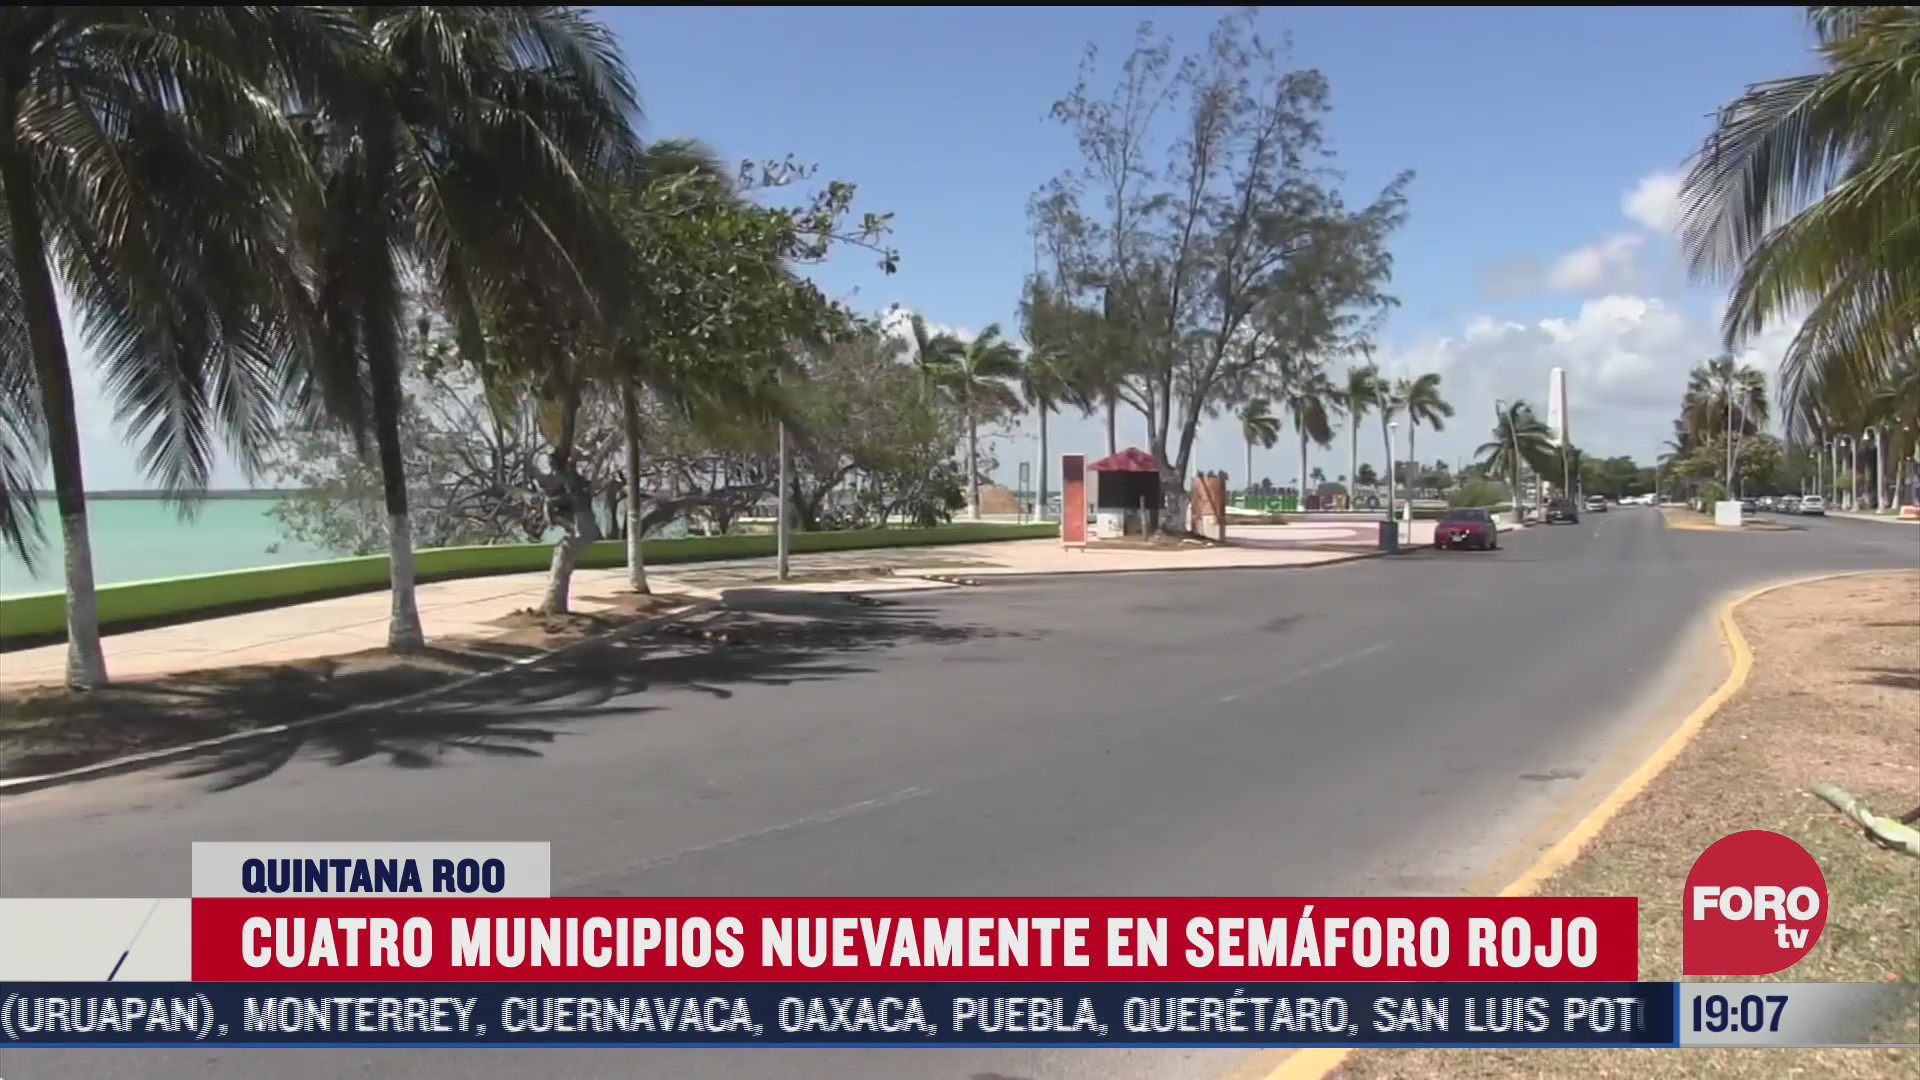 Quintana Roo puso a cuatro de sus municipios nuevamente en semáforo rojo tras relajar las medidas de sanidad